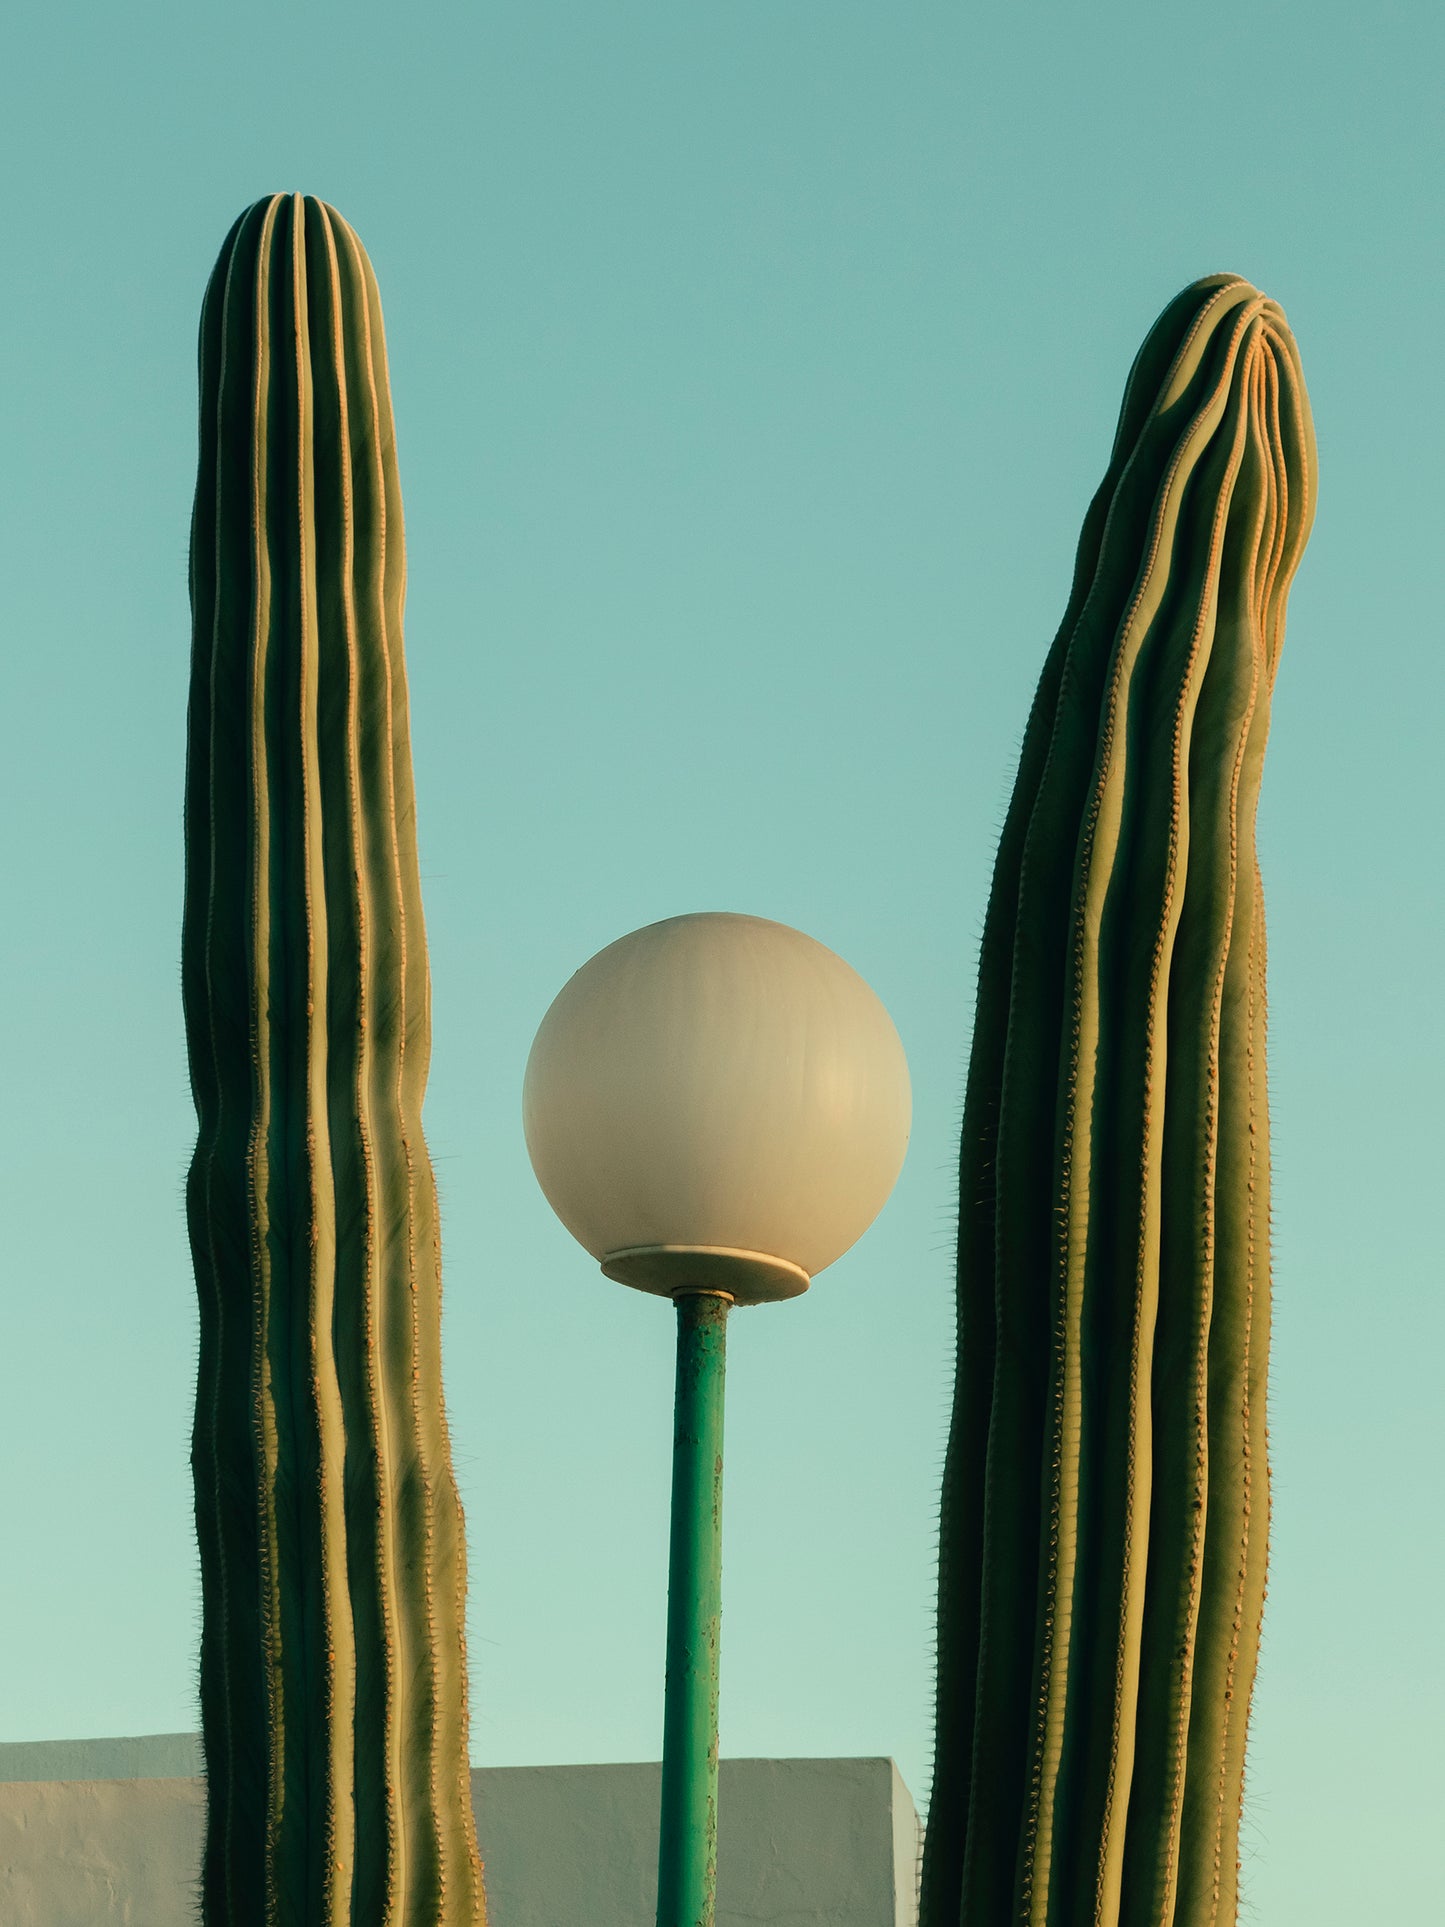 Romain Laprade - Cactus et réverbère, Lanzarote, 2022